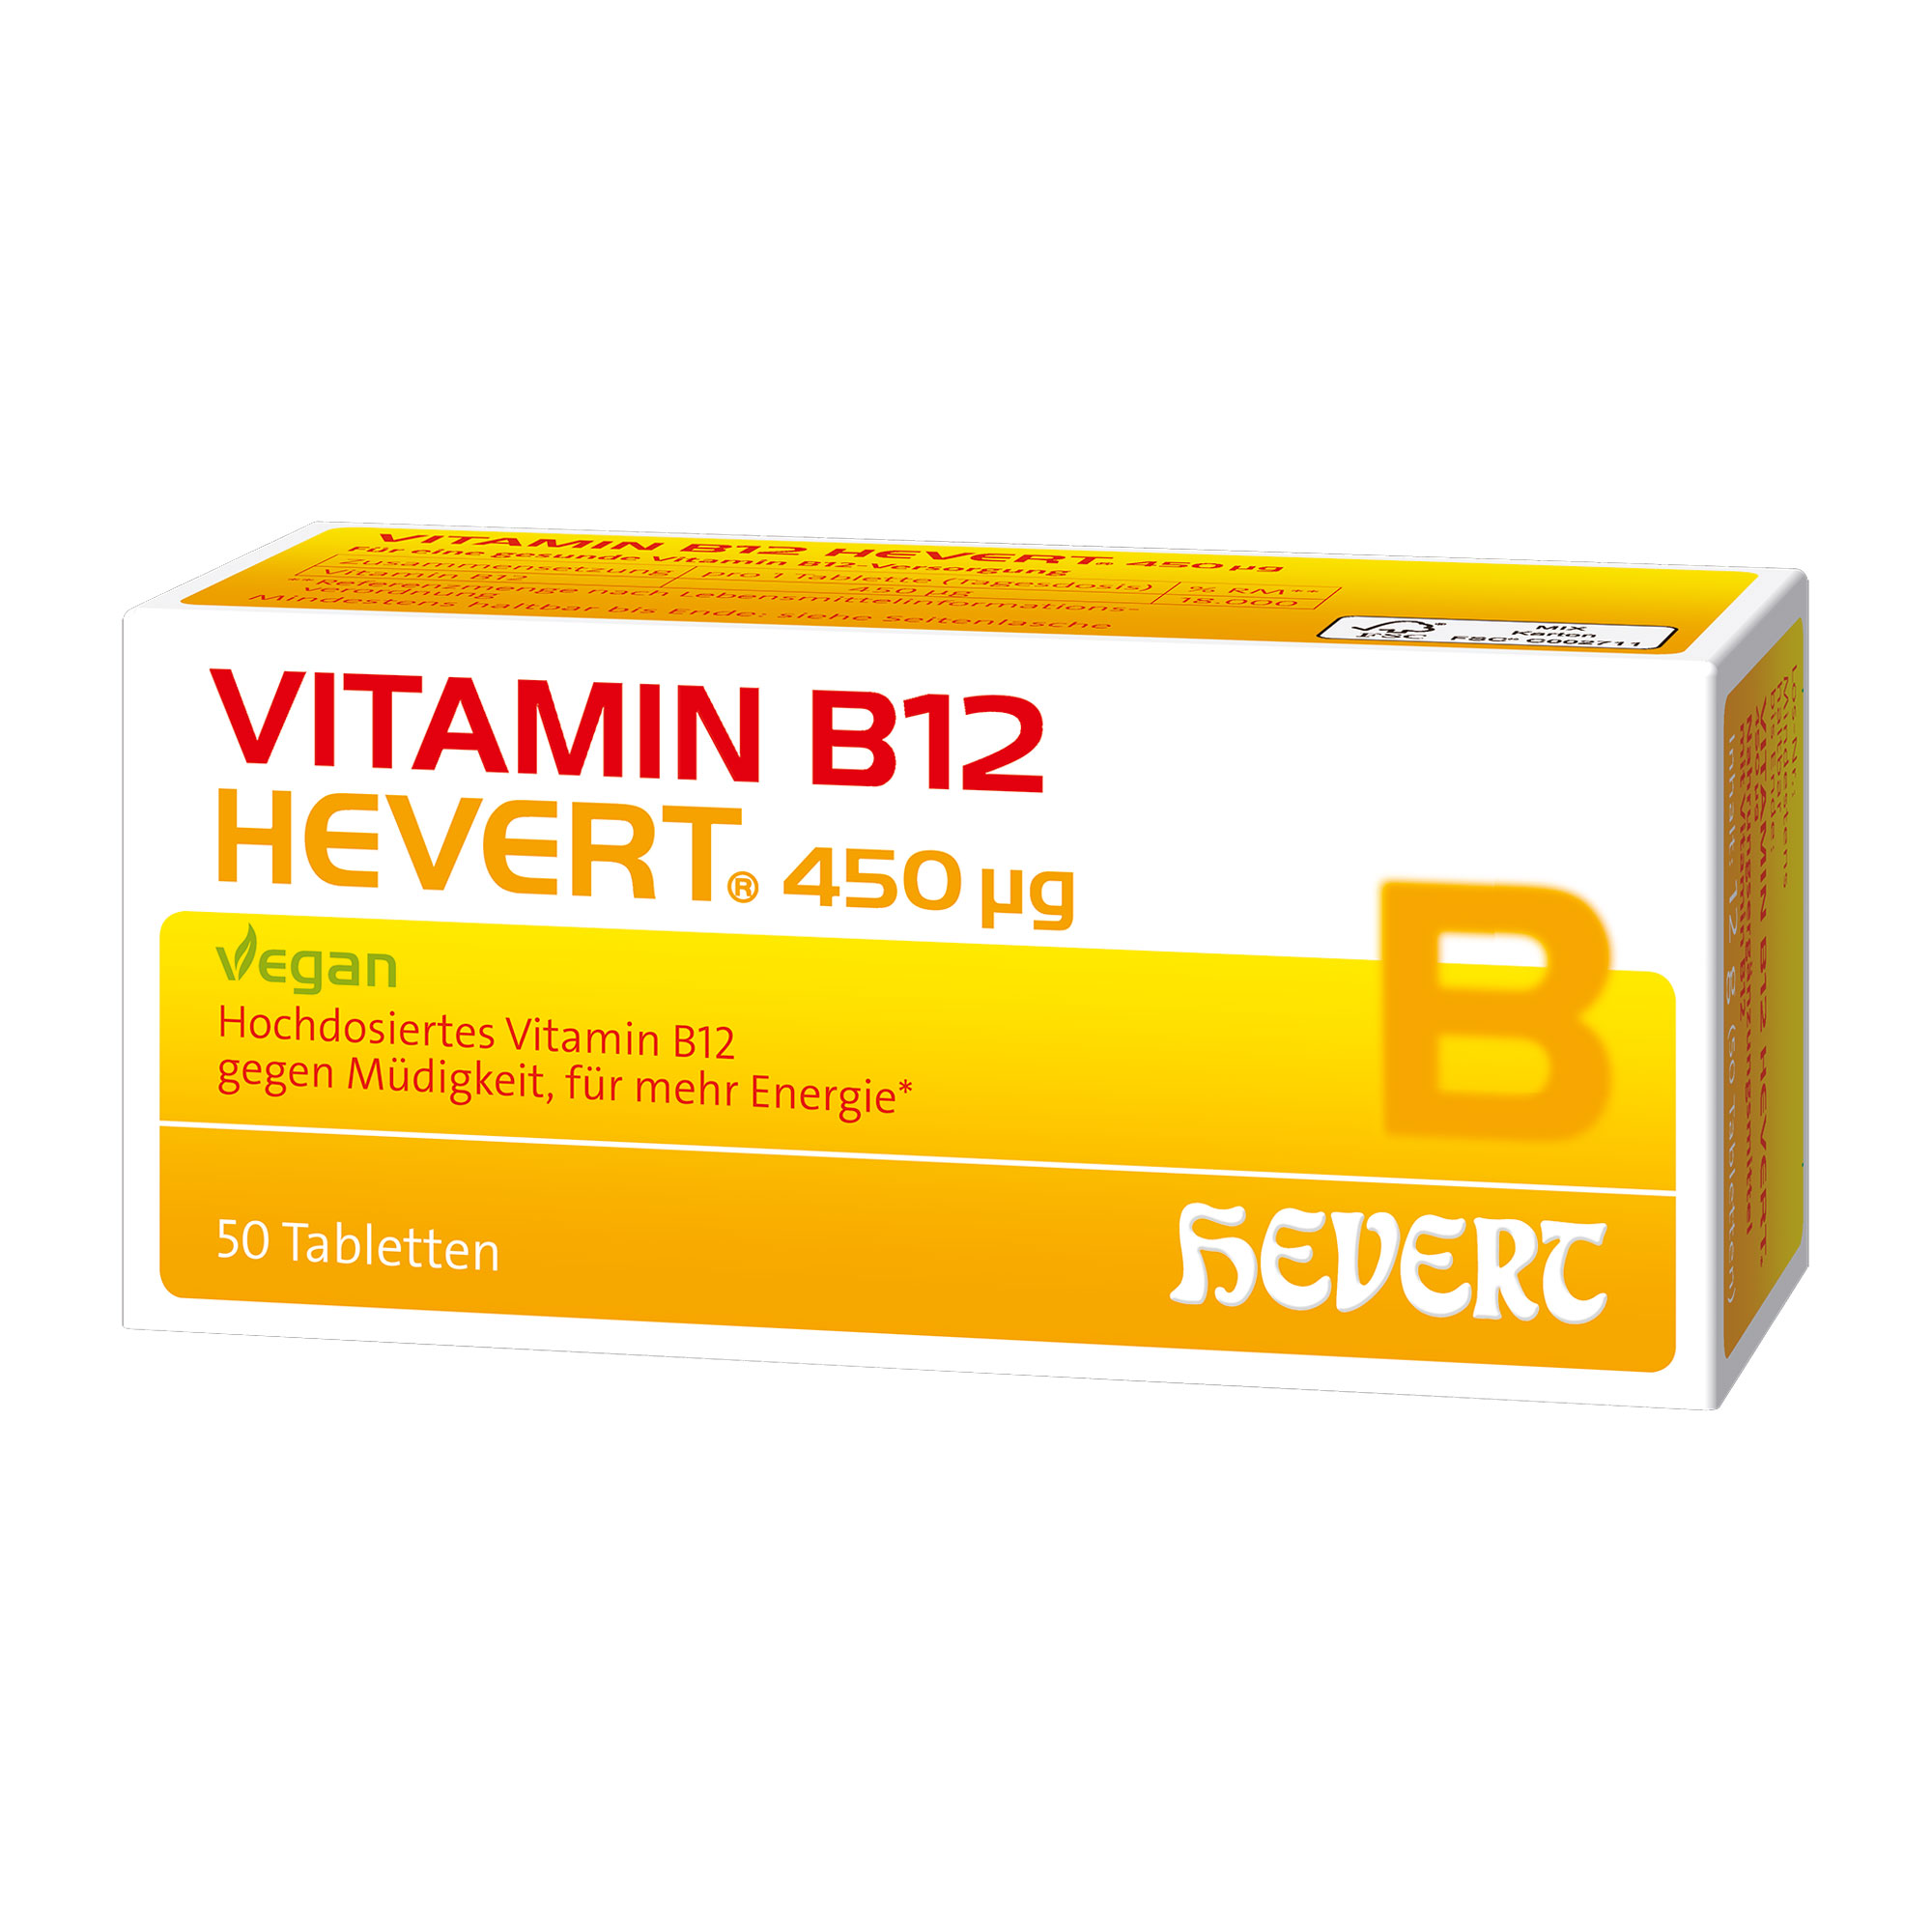 Nahrungsergänzungsmittel mit hochdosiertem Vitamin B12. Vegan.